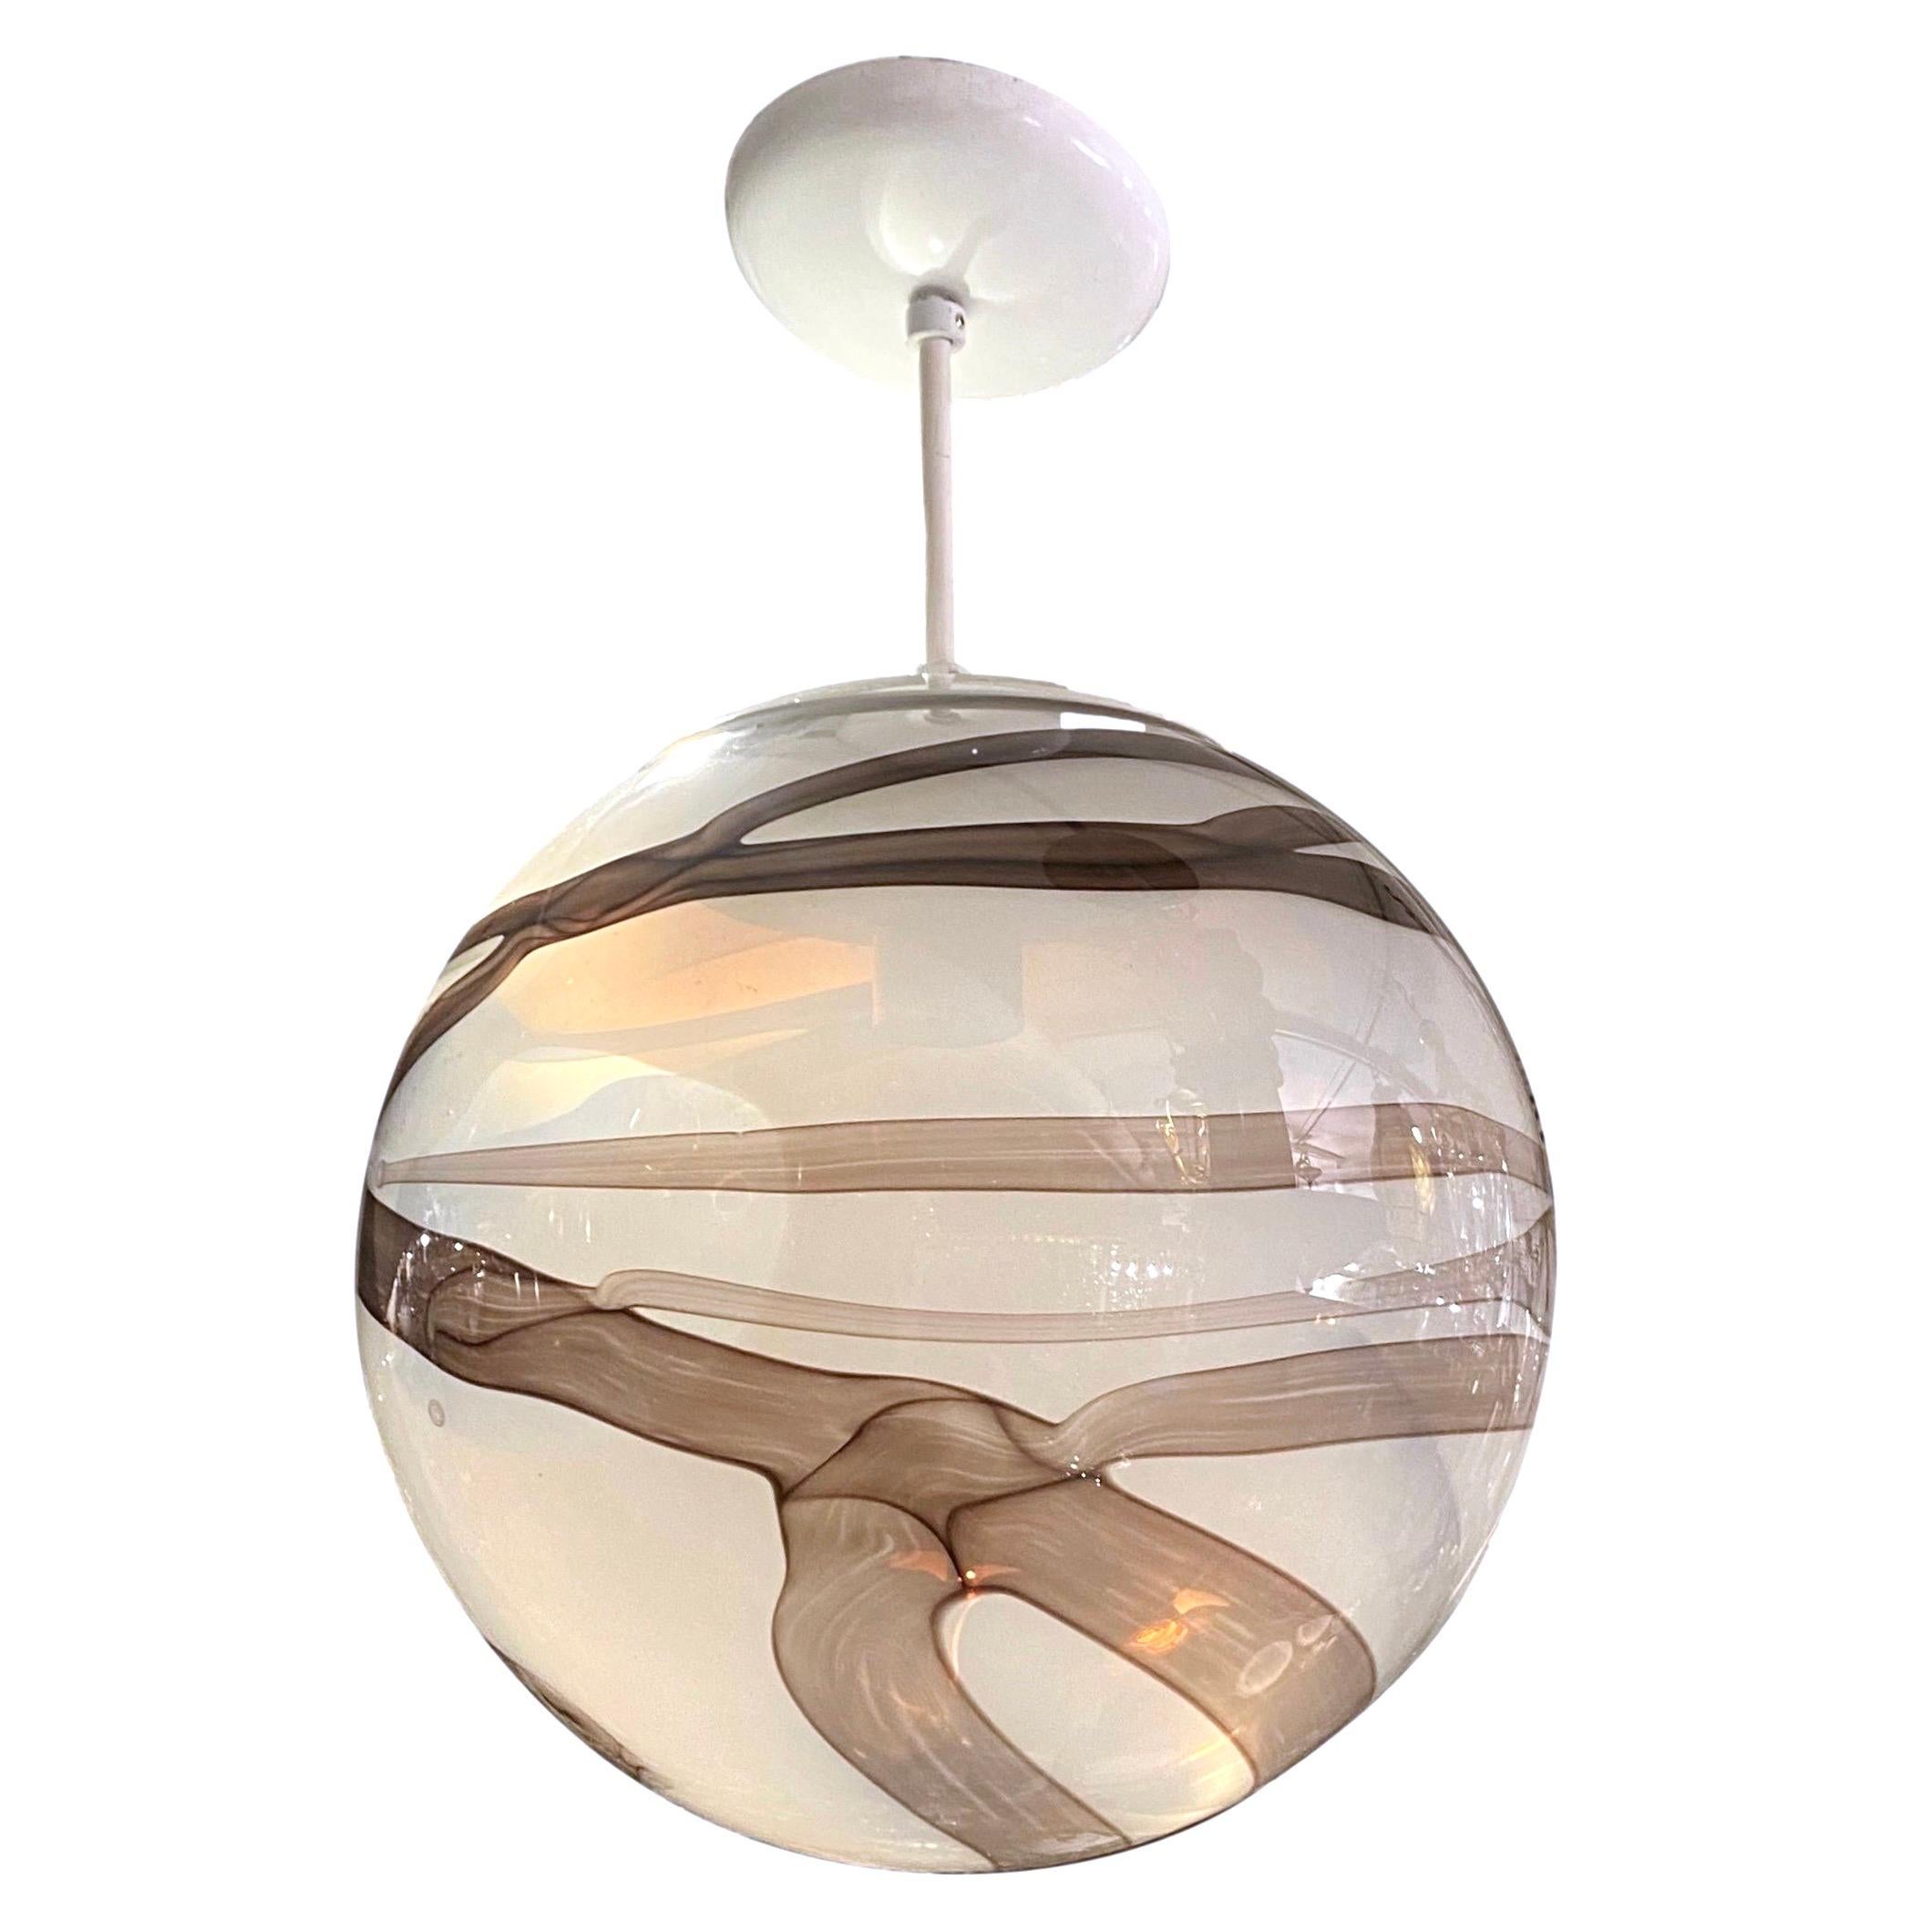 A vintage Italian circa 1960’s blown glass globe lantern.

Measurements:
Drop: 16